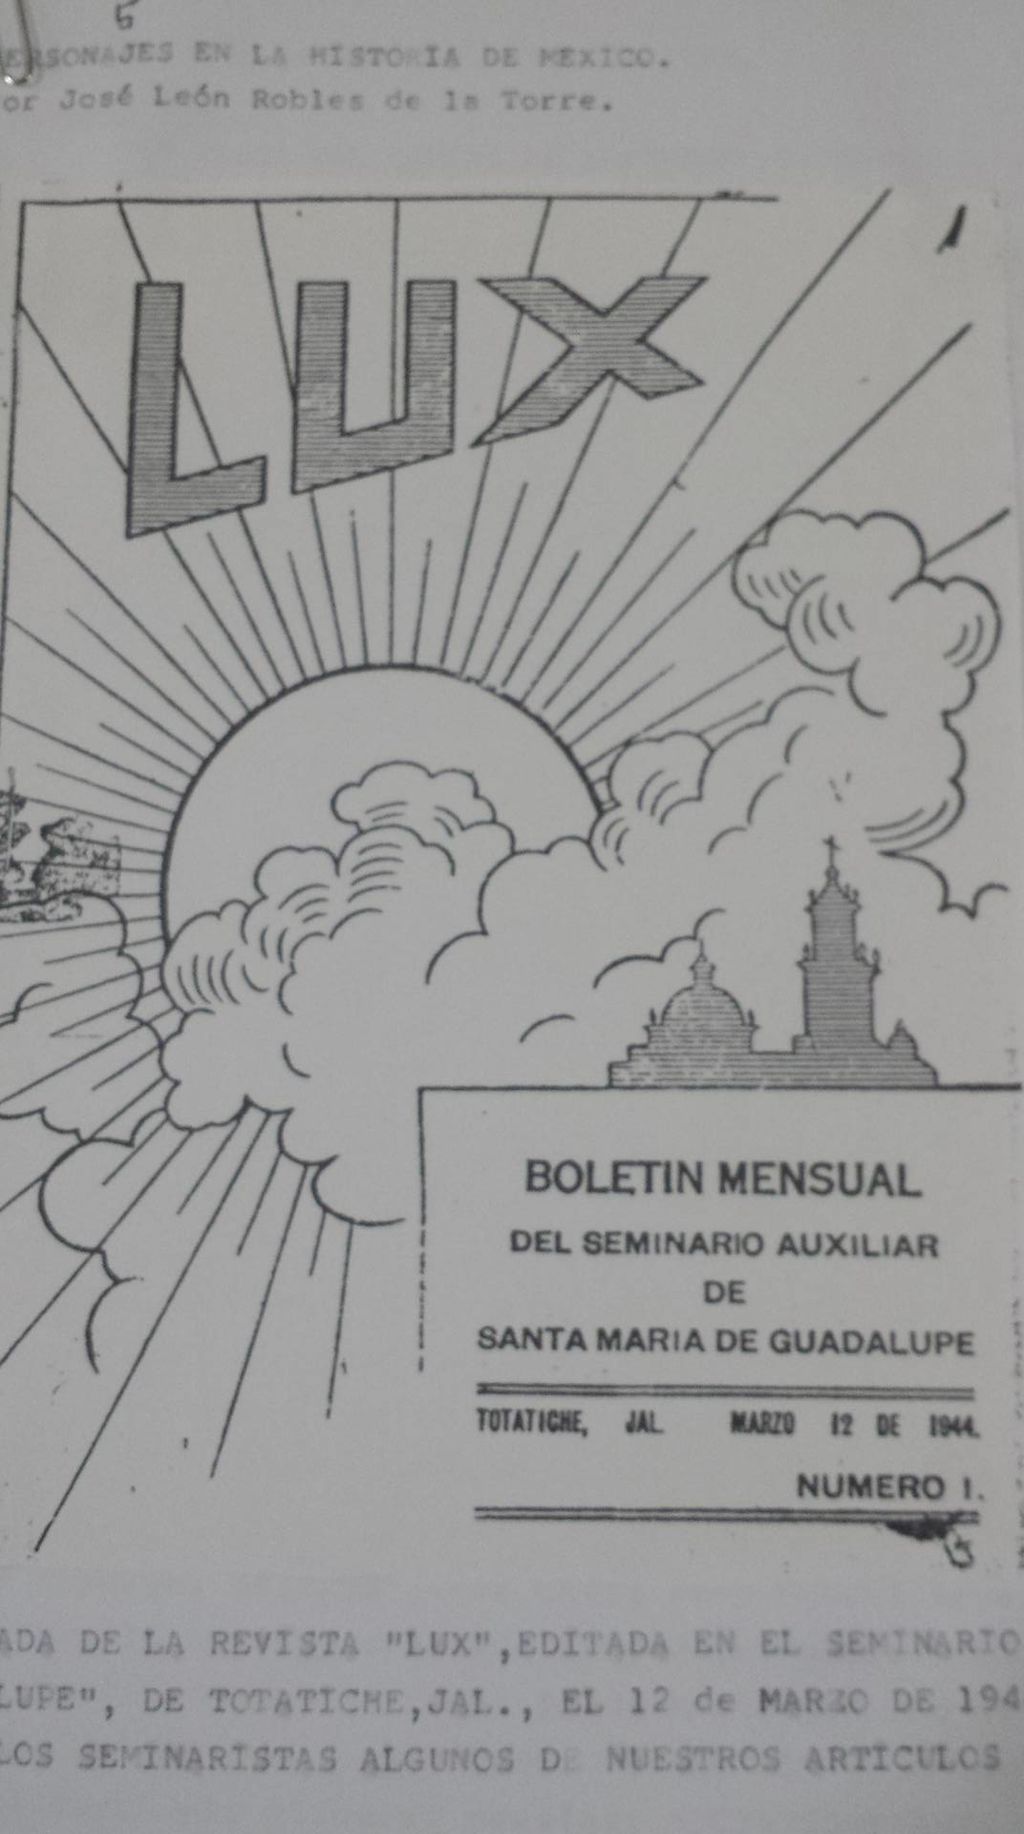 Portada de la revista Lux, editada en el Seminario de Santa María de Guadalupe, de Totatiche, Jal., el 12 de marzo de 1944, donde publicamos los seminaristas algunos de nuestros artículos o poesías. (CORTESÍA)